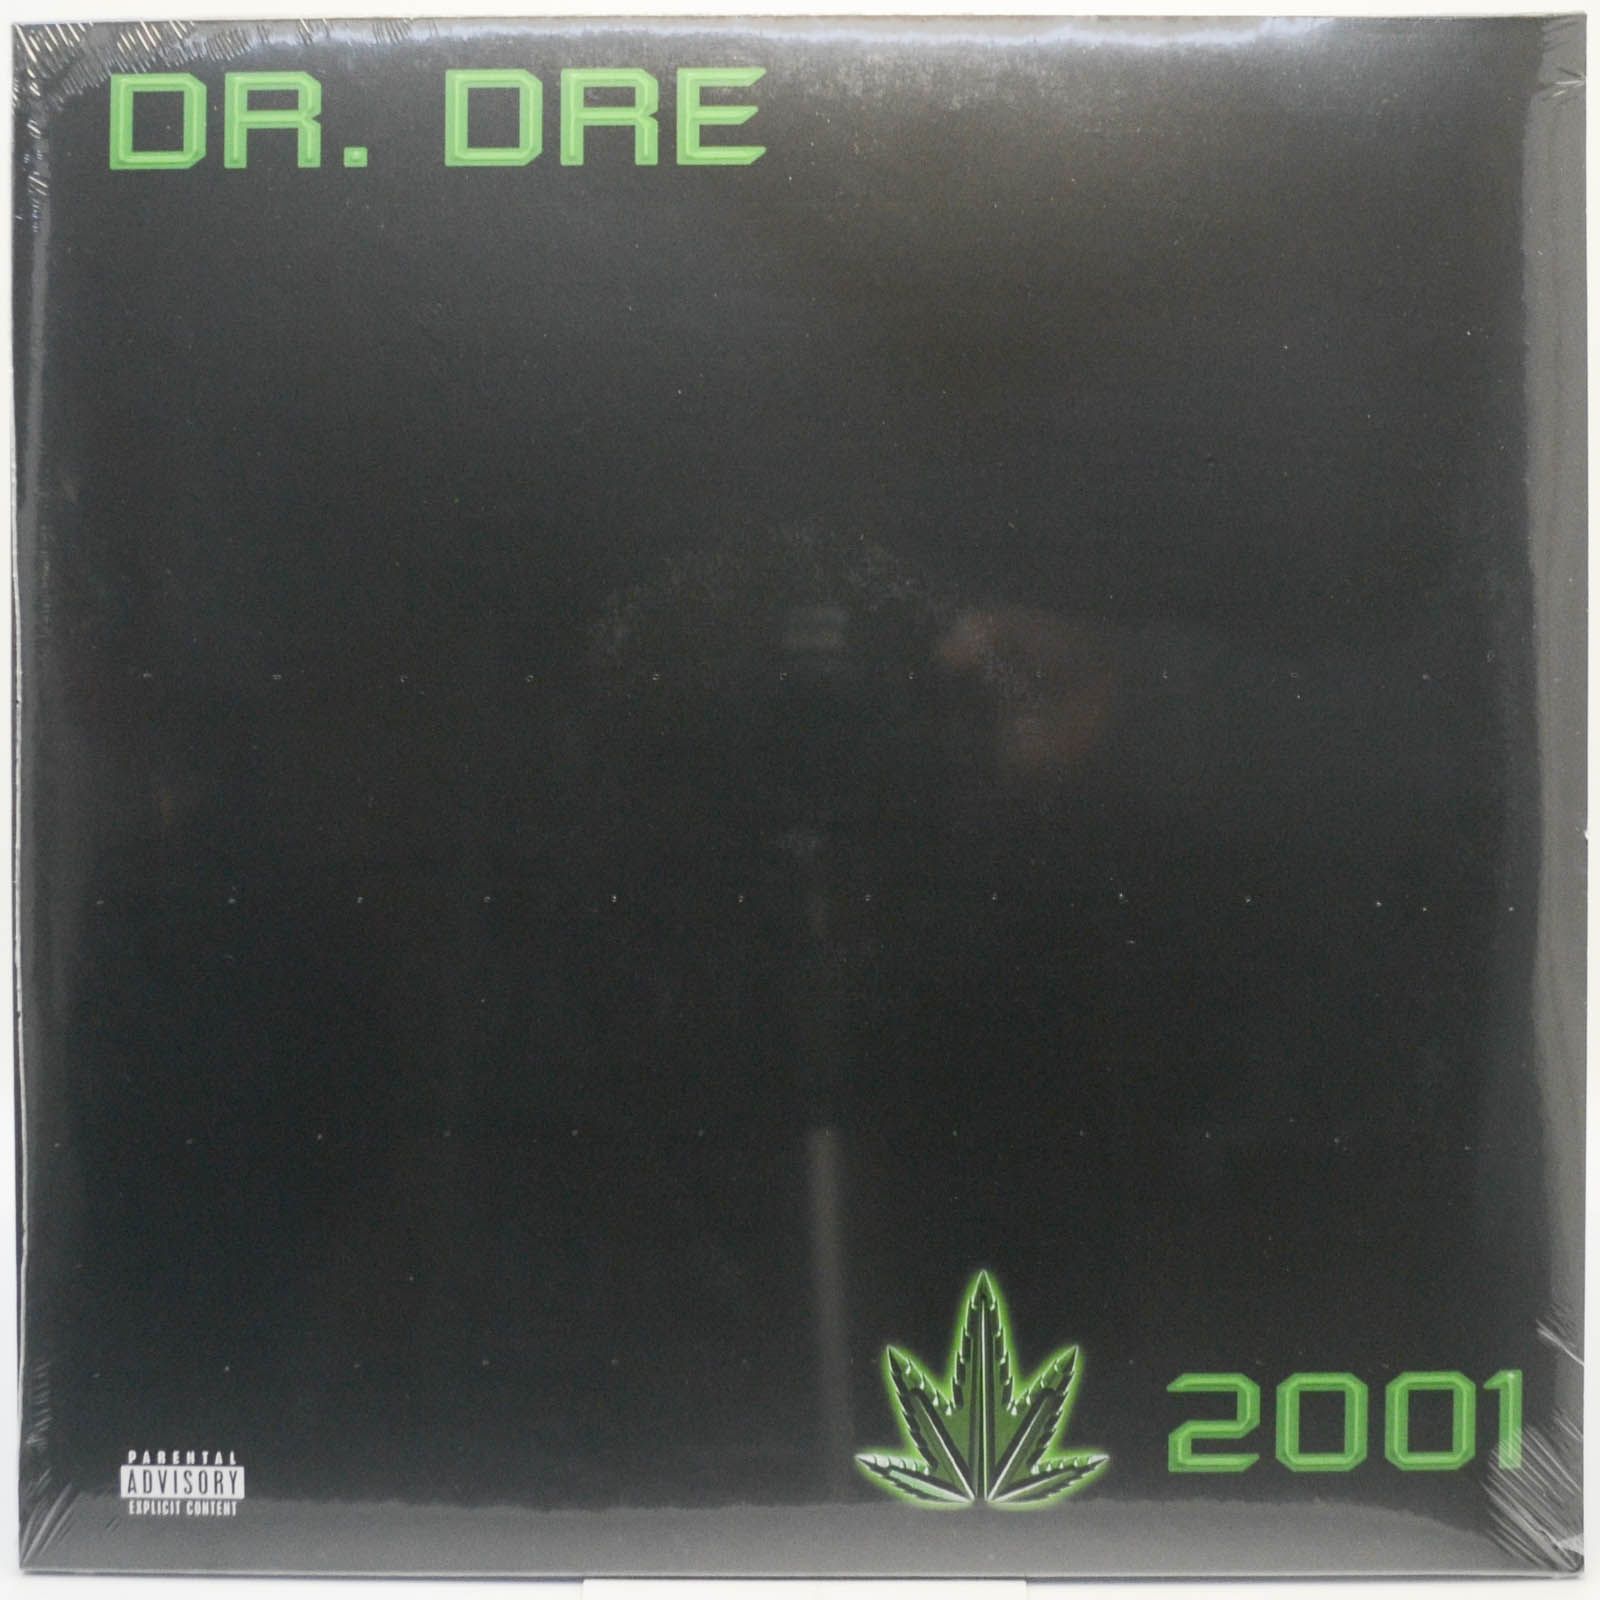 Dr. Dre — 2001 (2LP), 1999